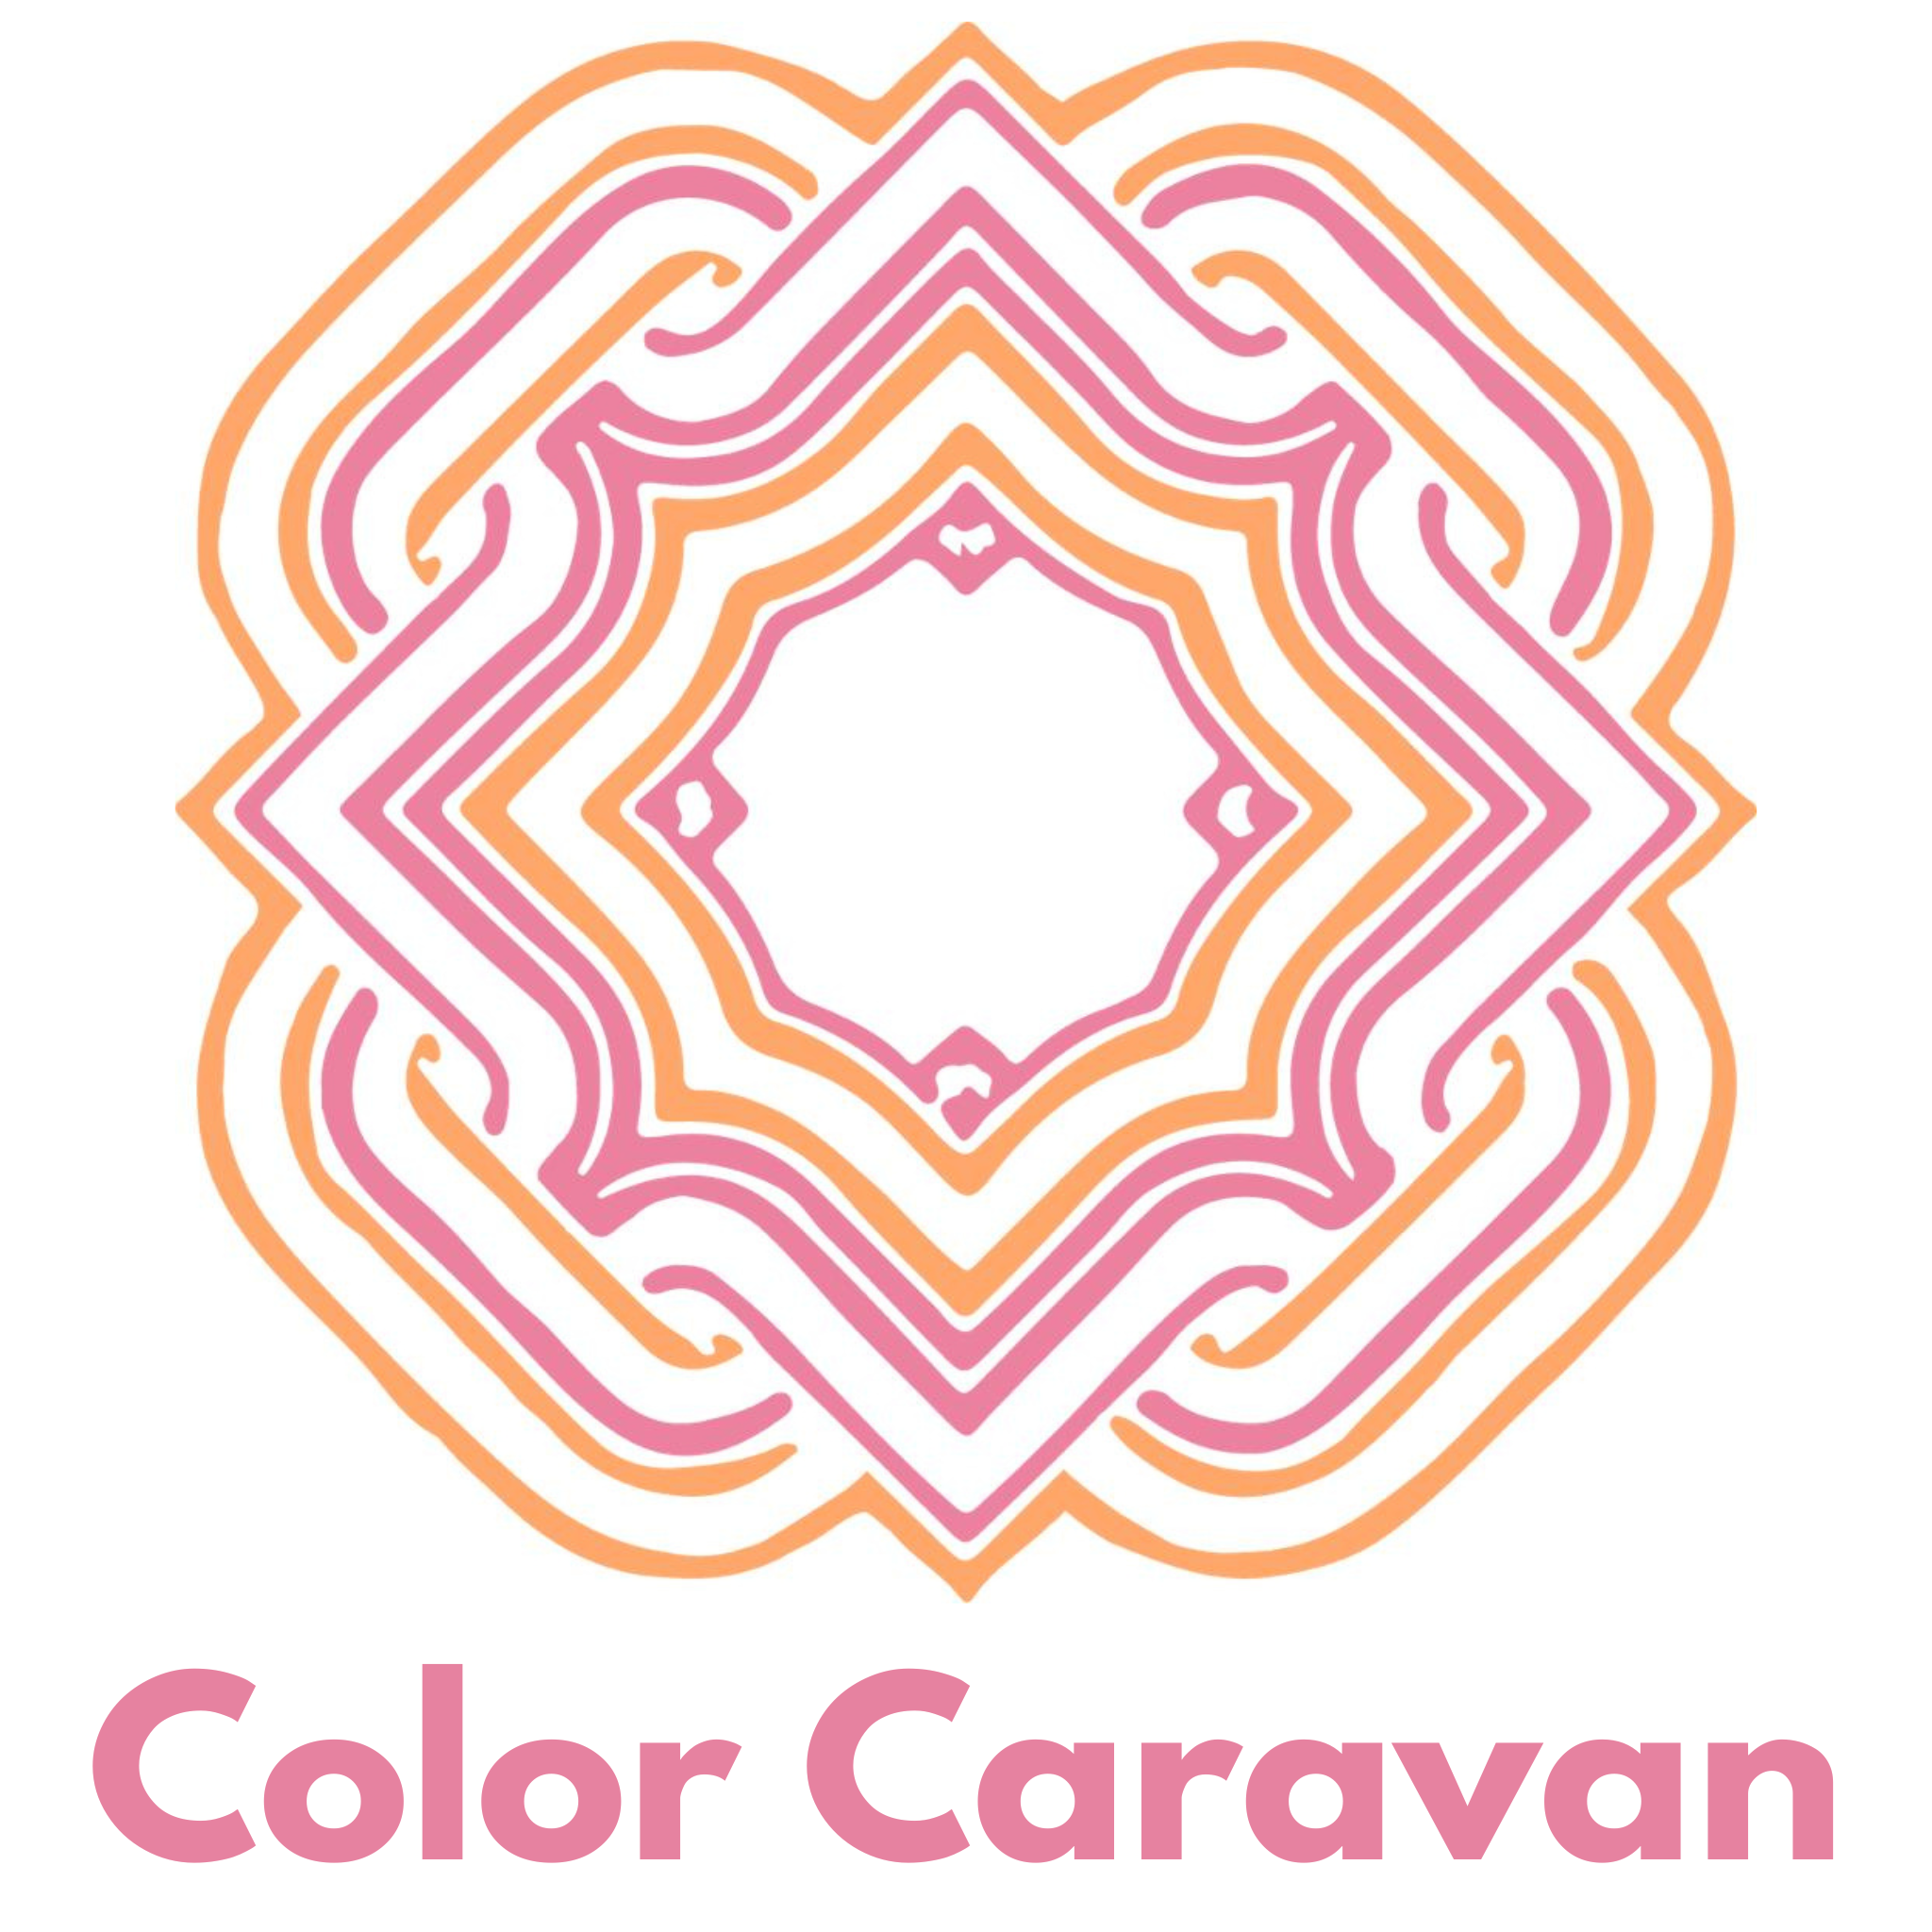 Color Caravan